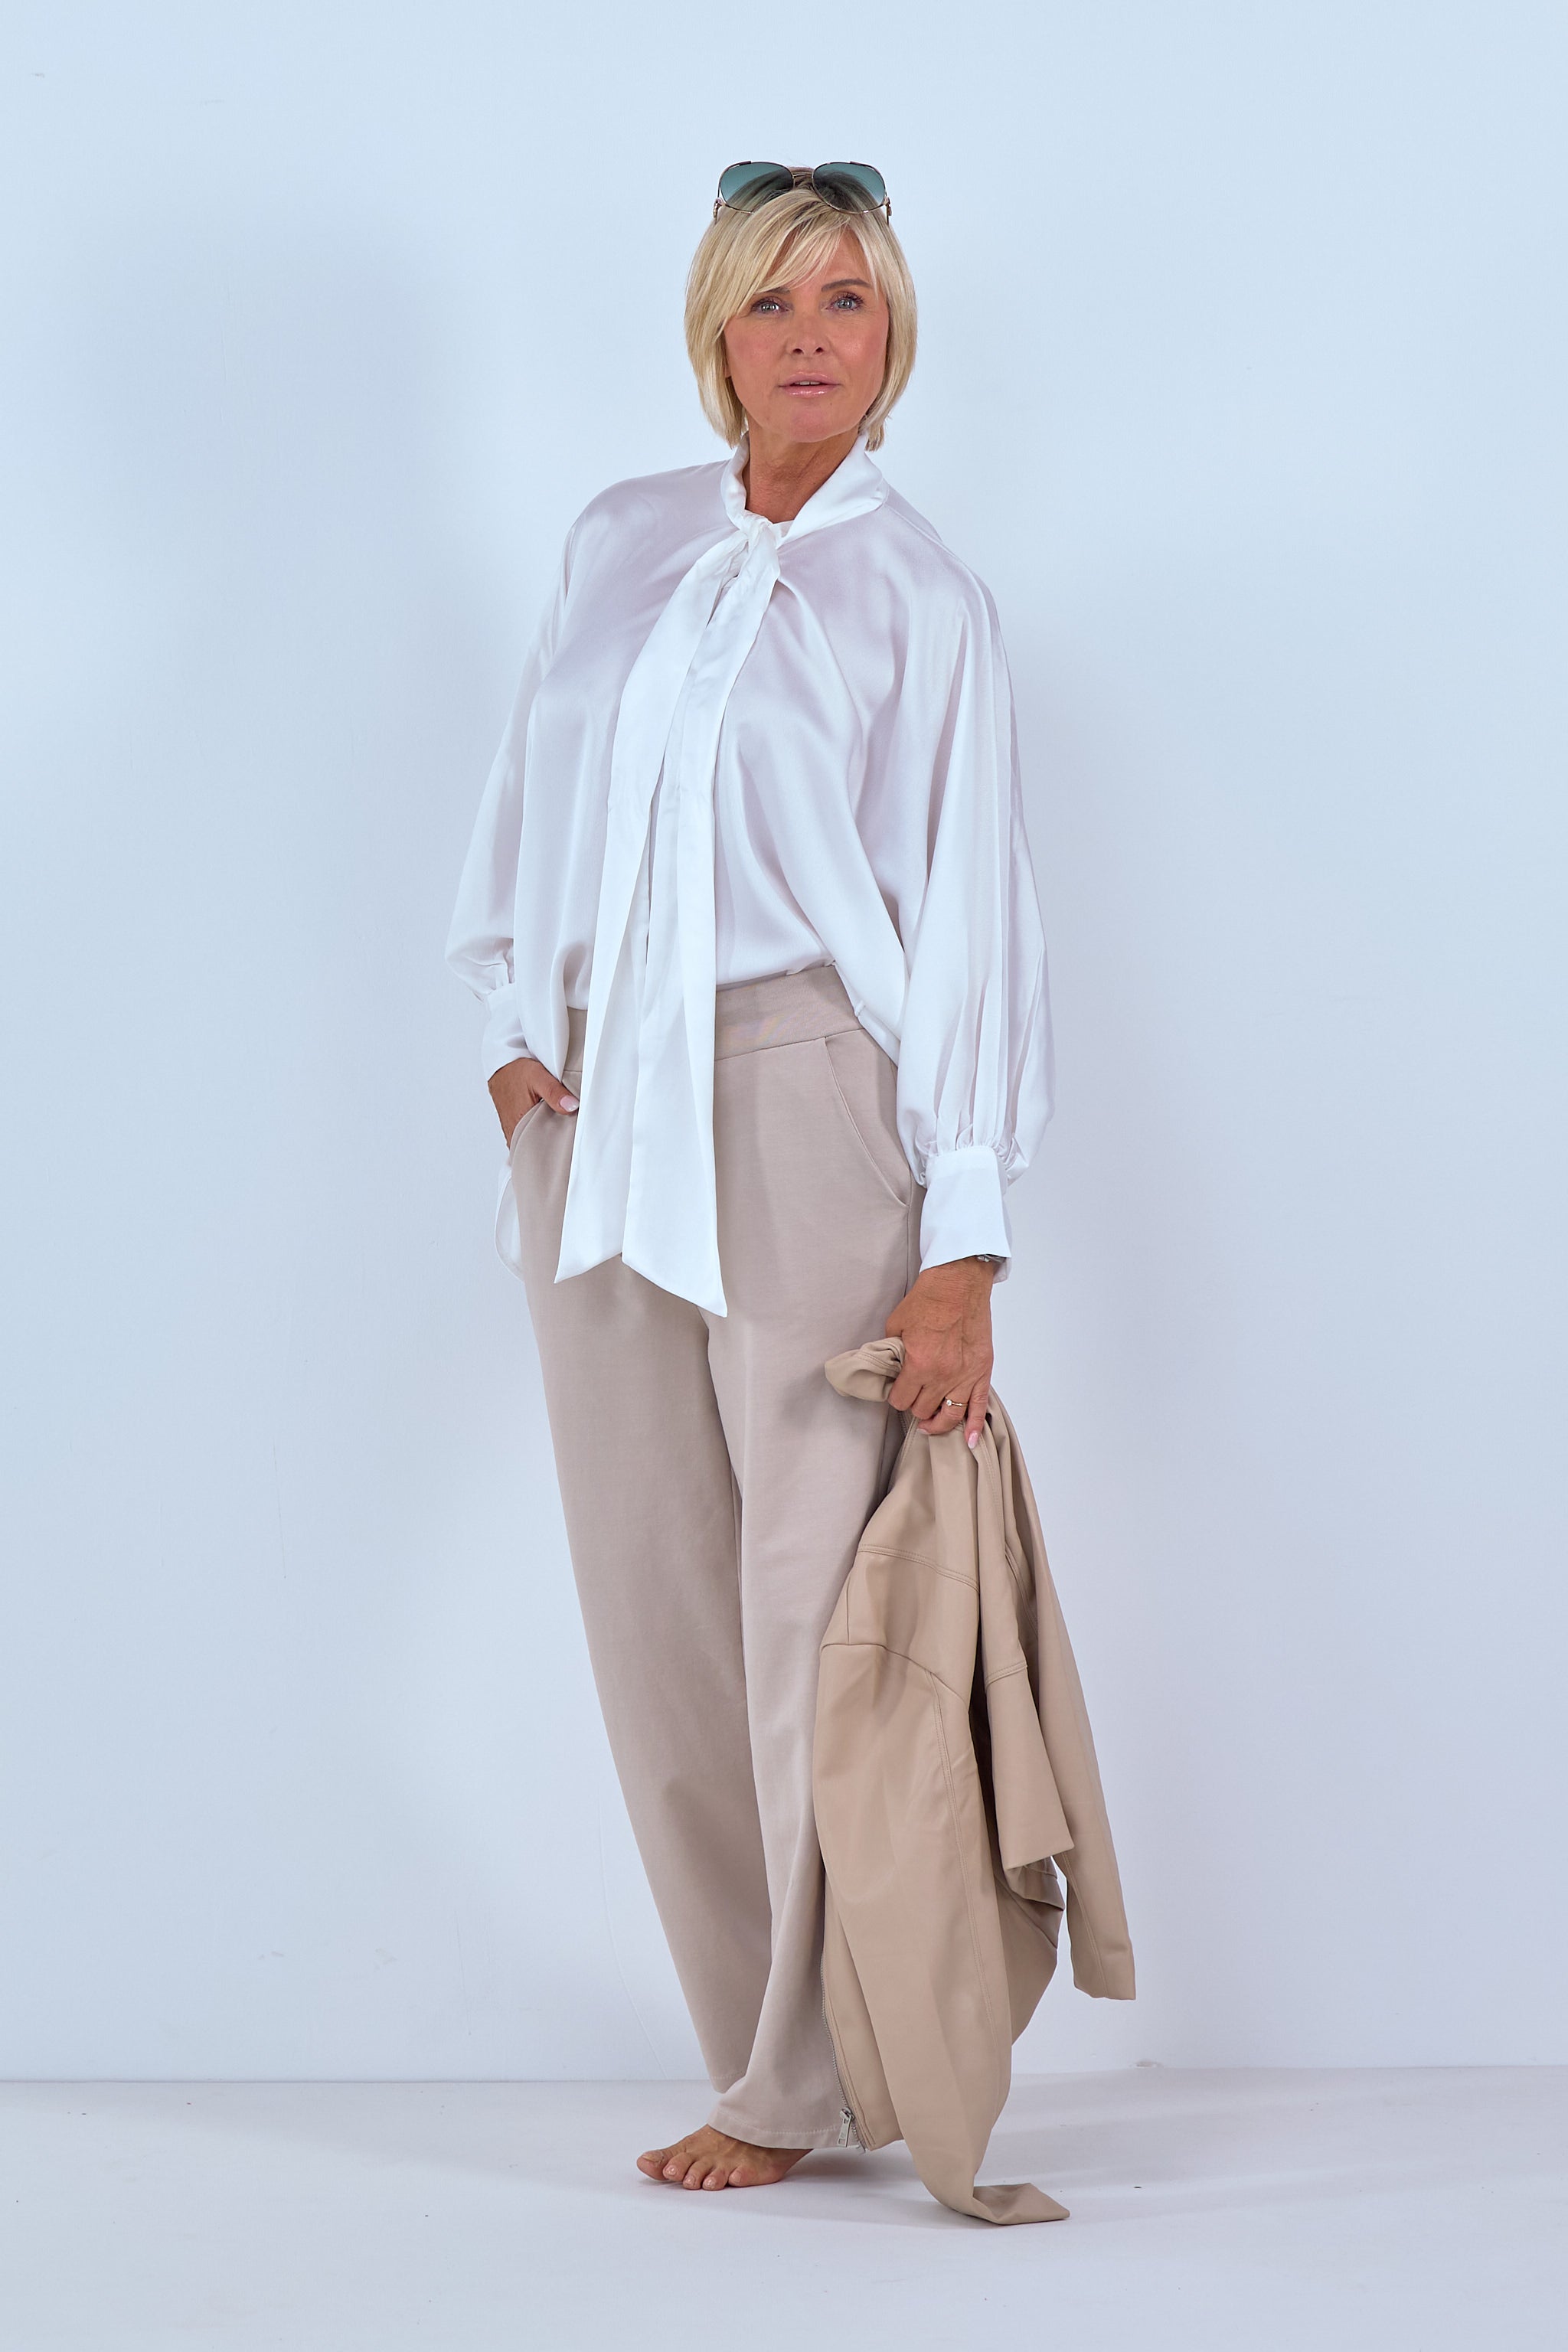 Bluse aus Glanzstoff und weitem Arm in weiß von Trends & Lifestyle Deutschland GmbH